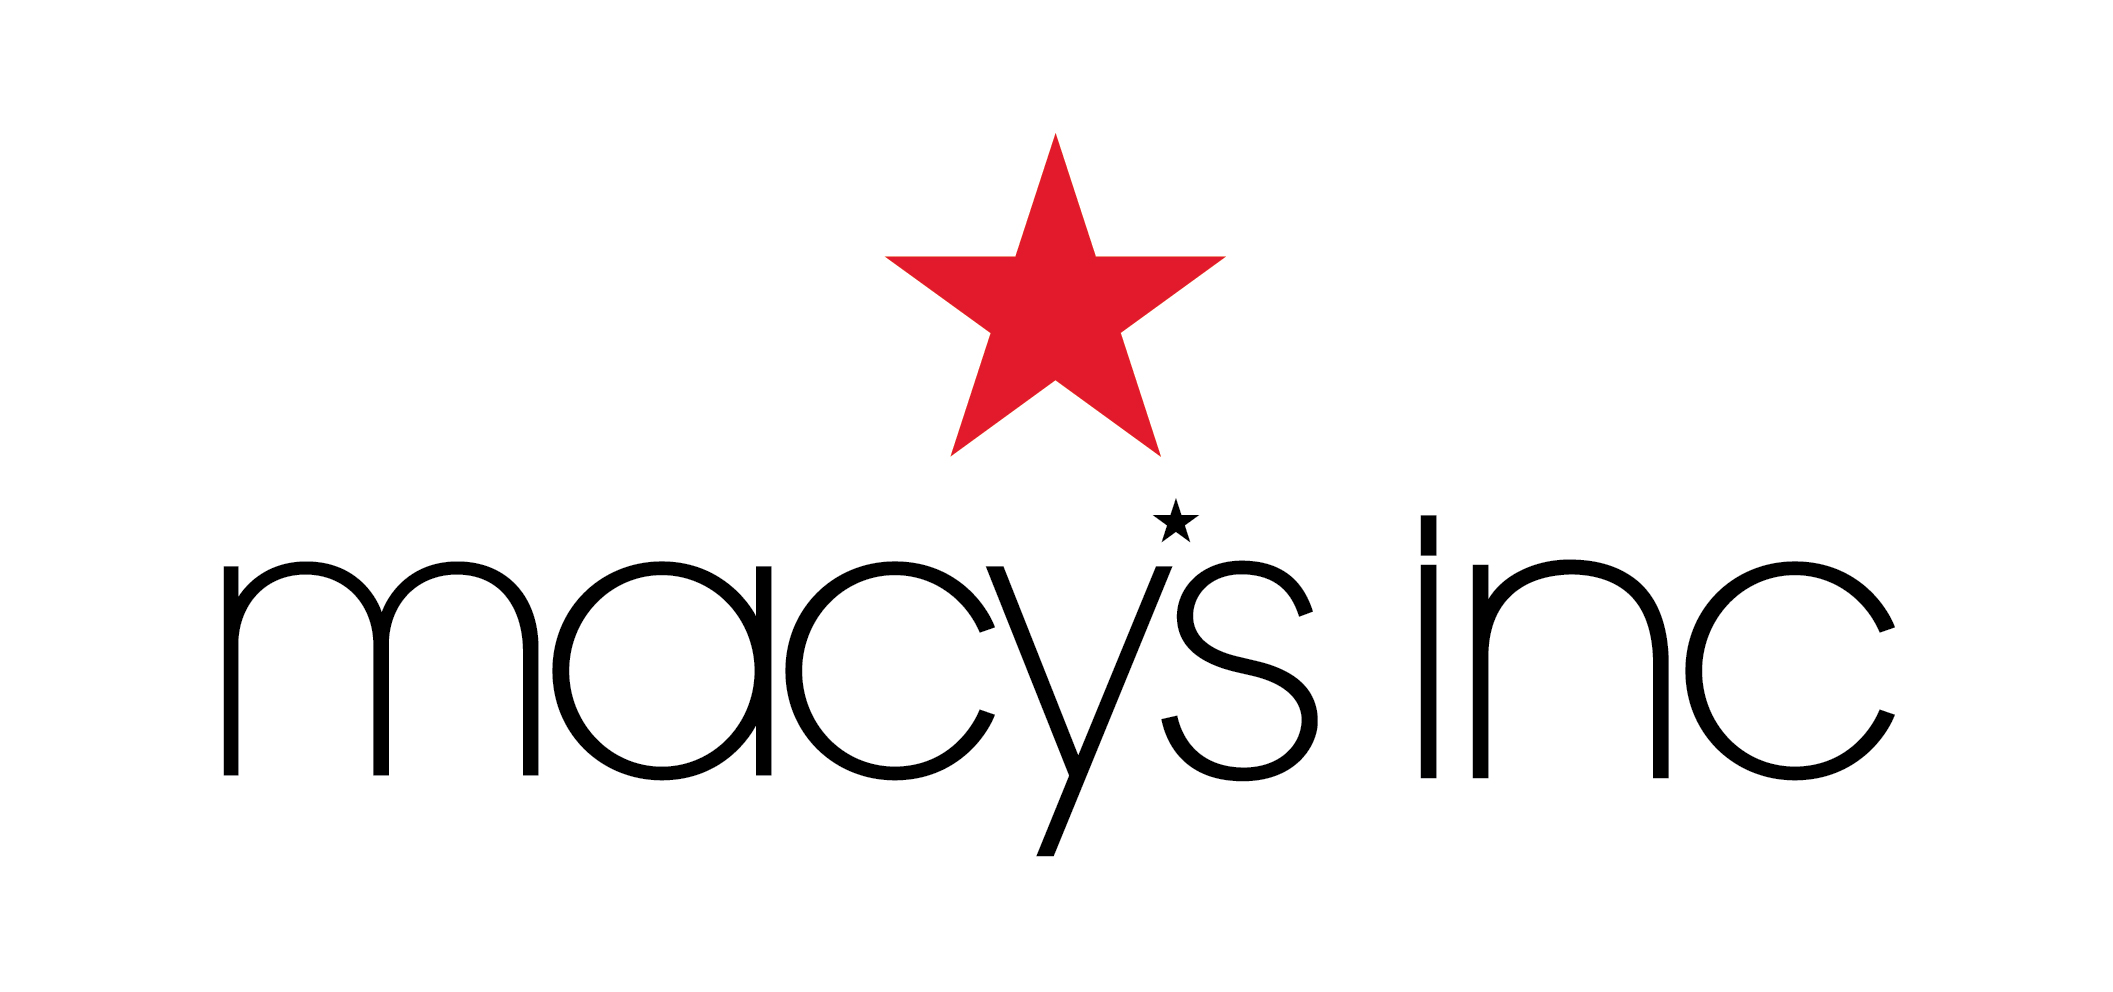 macys-inc-logo-red-black-on-white_high.jpg